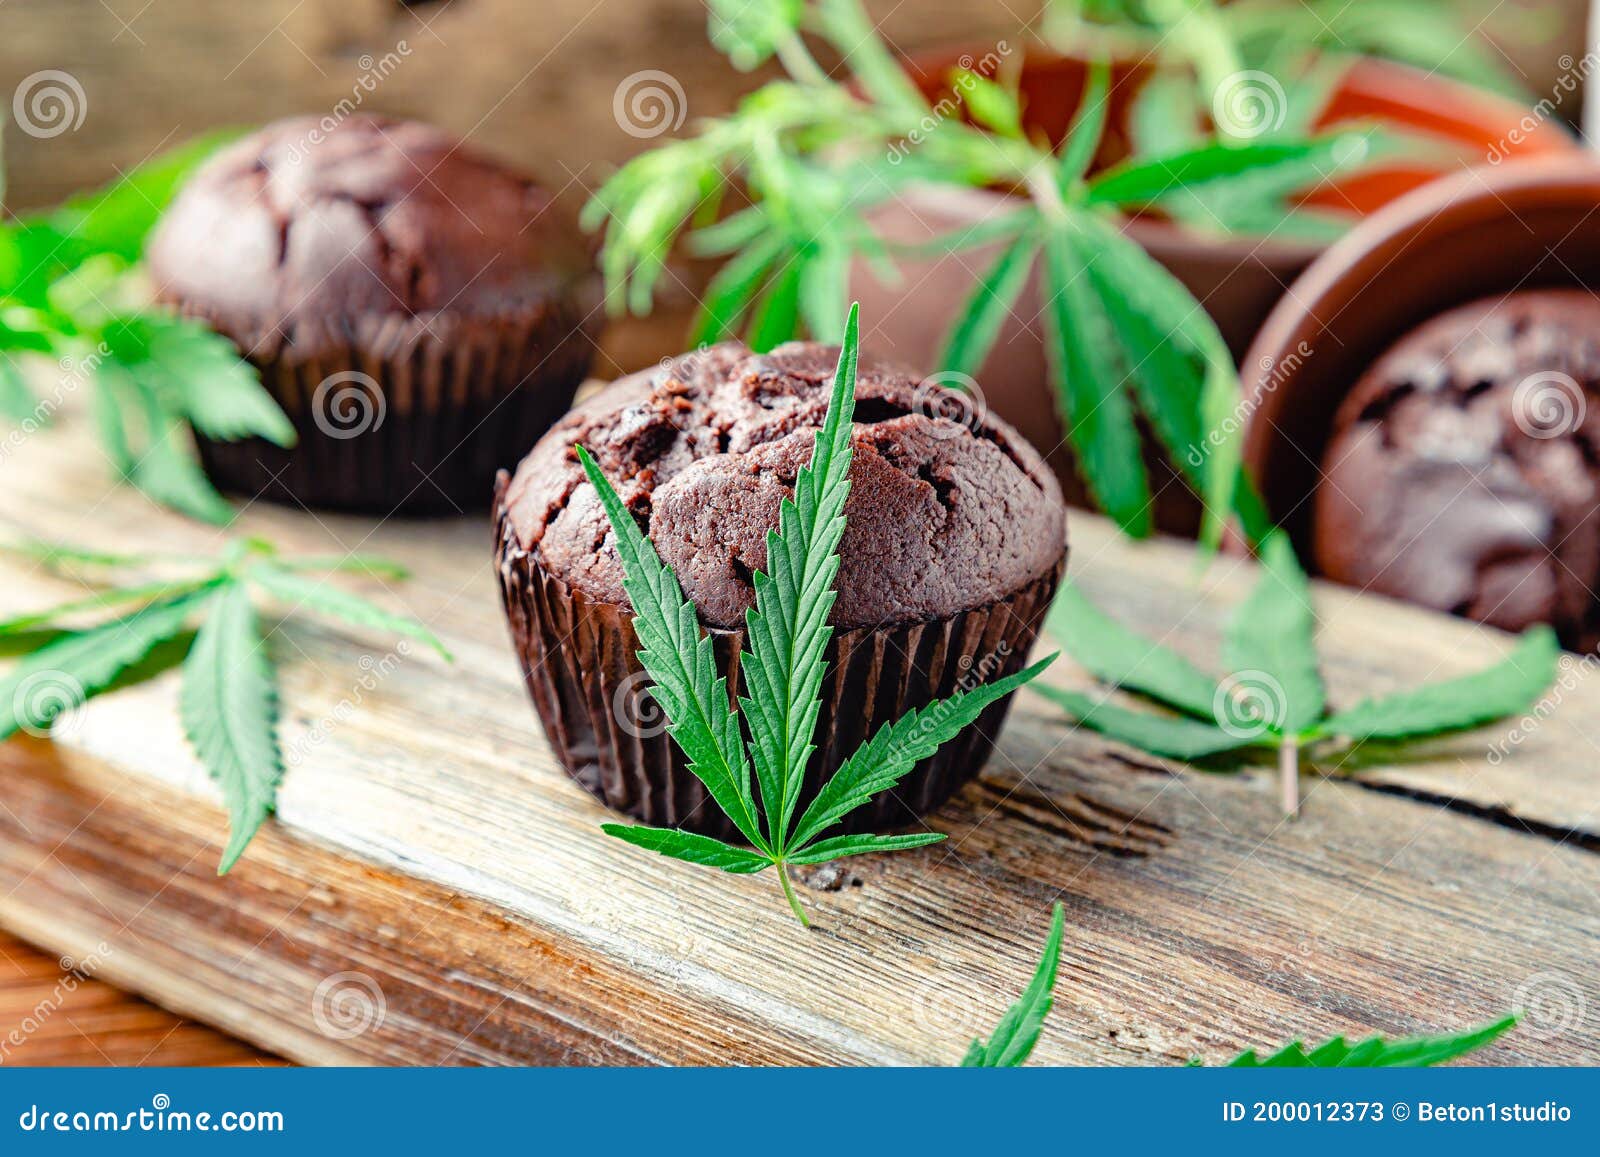 Как делать кексы с марихуаной сбор семян канабиса